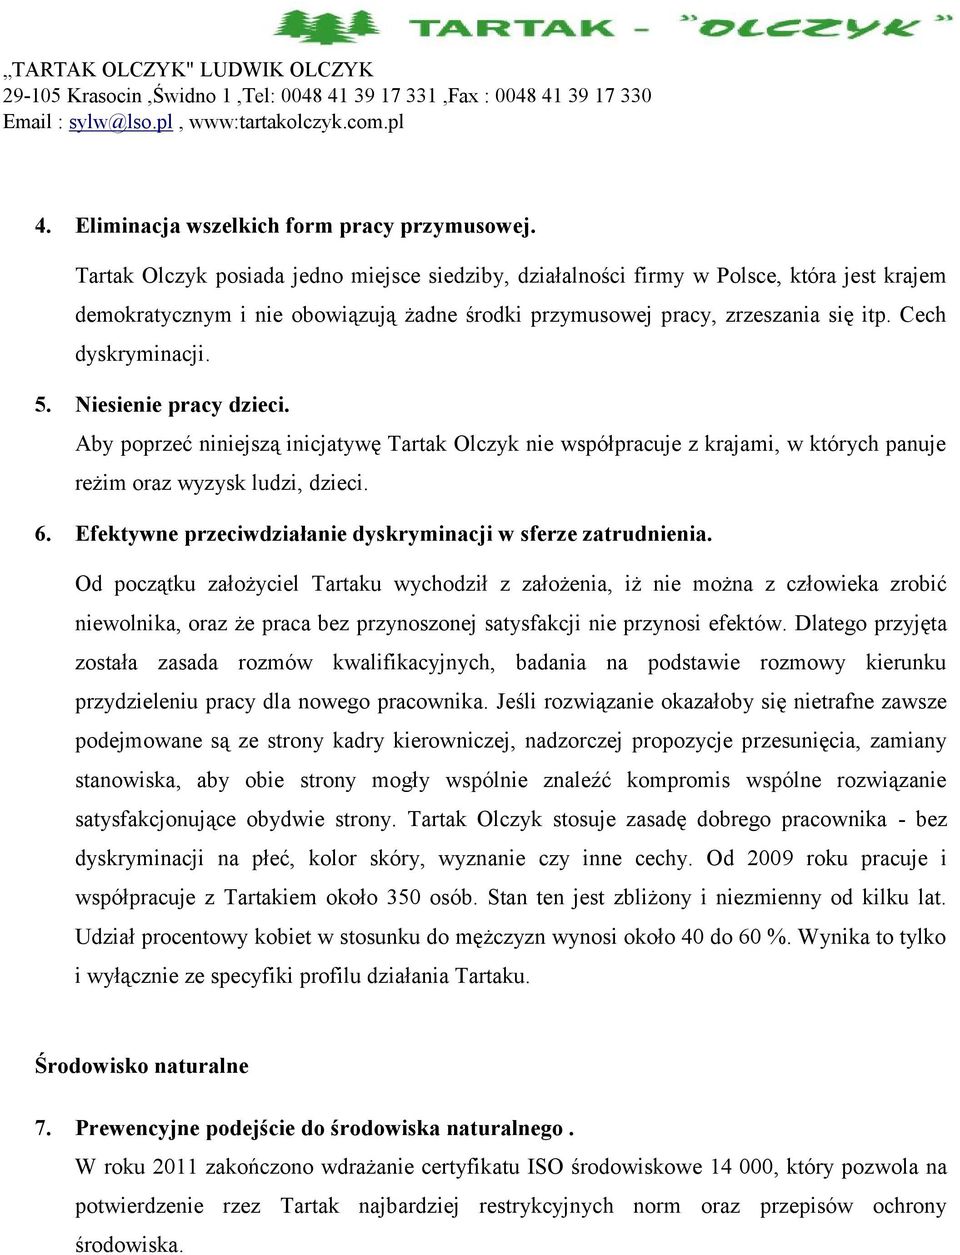 Niesienie pracy dzieci. Aby poprzeć niniejszą inicjatywę Tartak Olczyk nie współpracuje z krajami, w których panuje reżim oraz wyzysk ludzi, dzieci. 6.